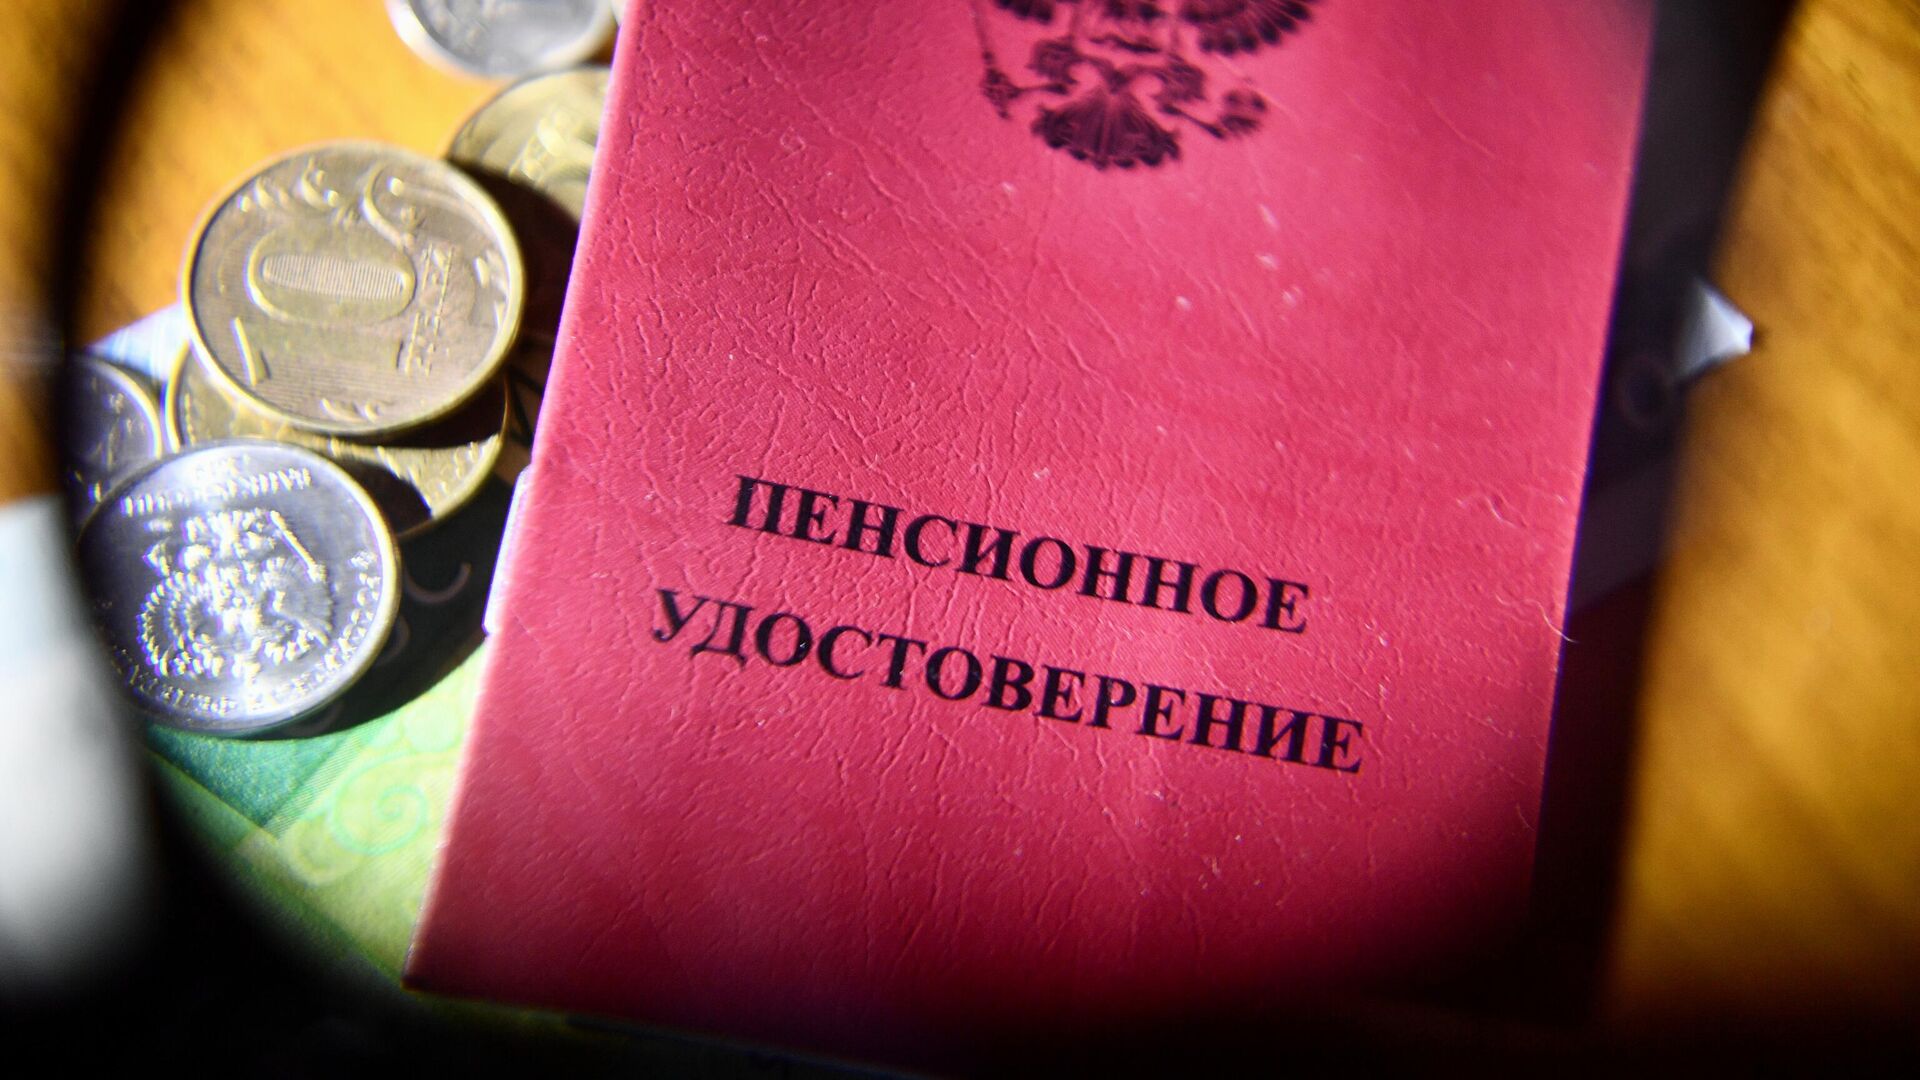 Пенсионное удостоверение - РИА Новости, 1920, 27.03.2021